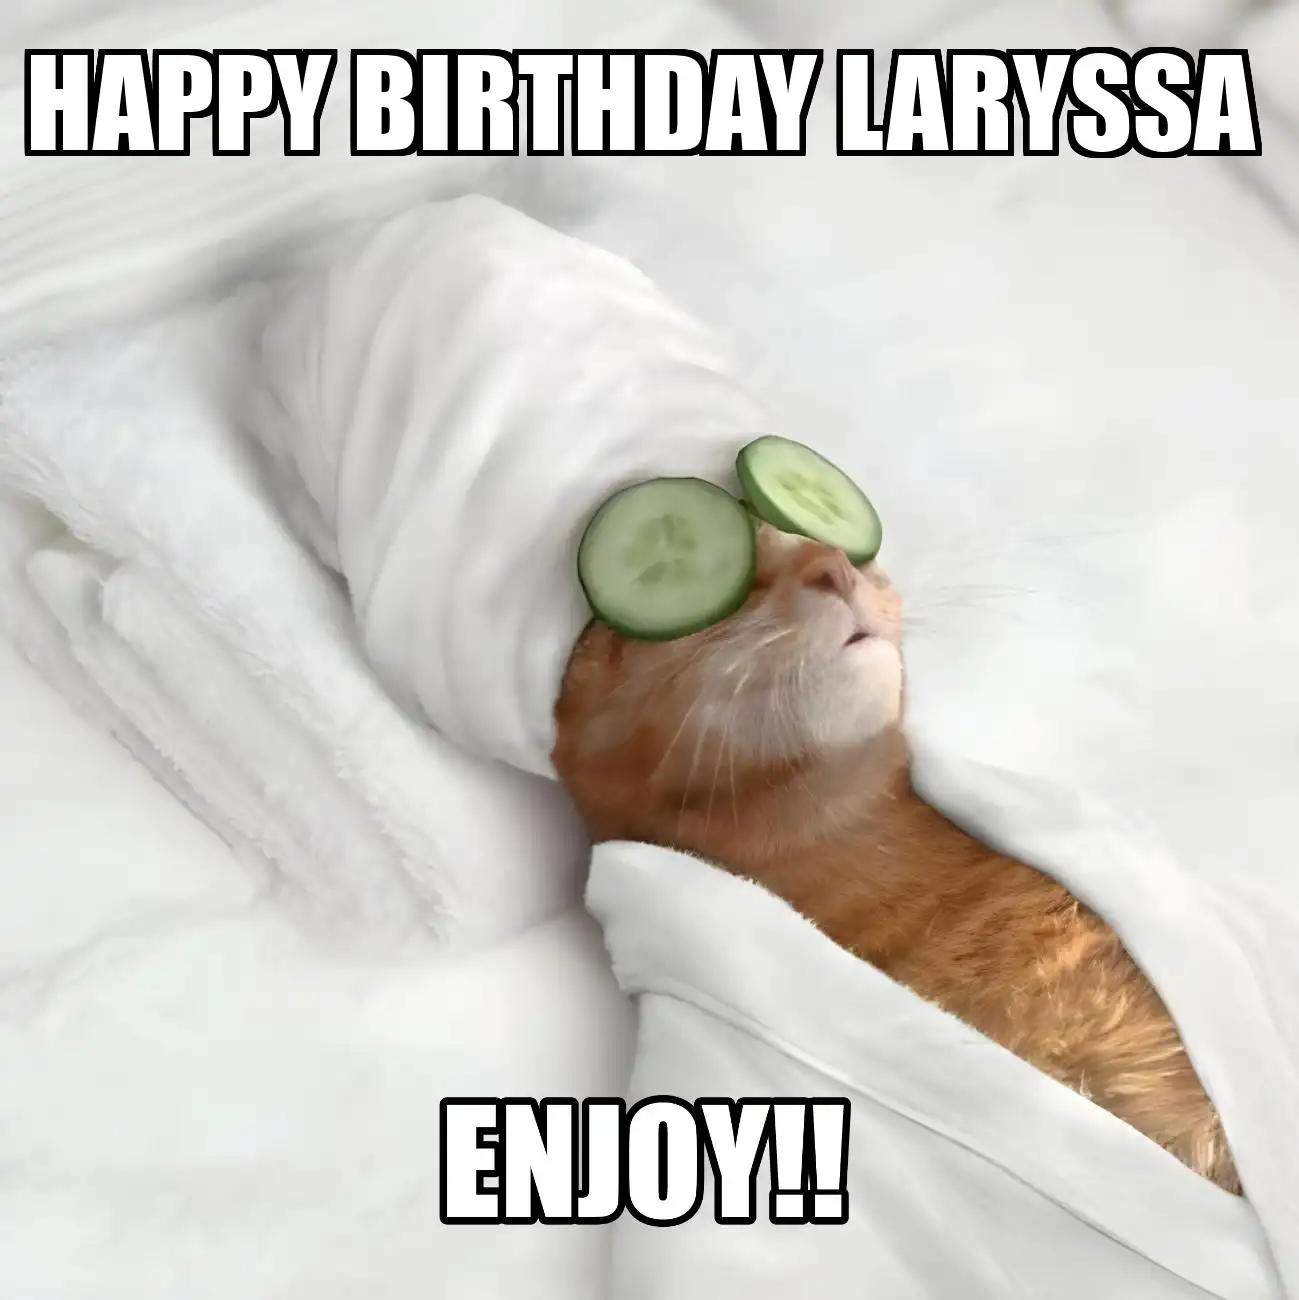 Happy Birthday Laryssa Enjoy Cat Meme